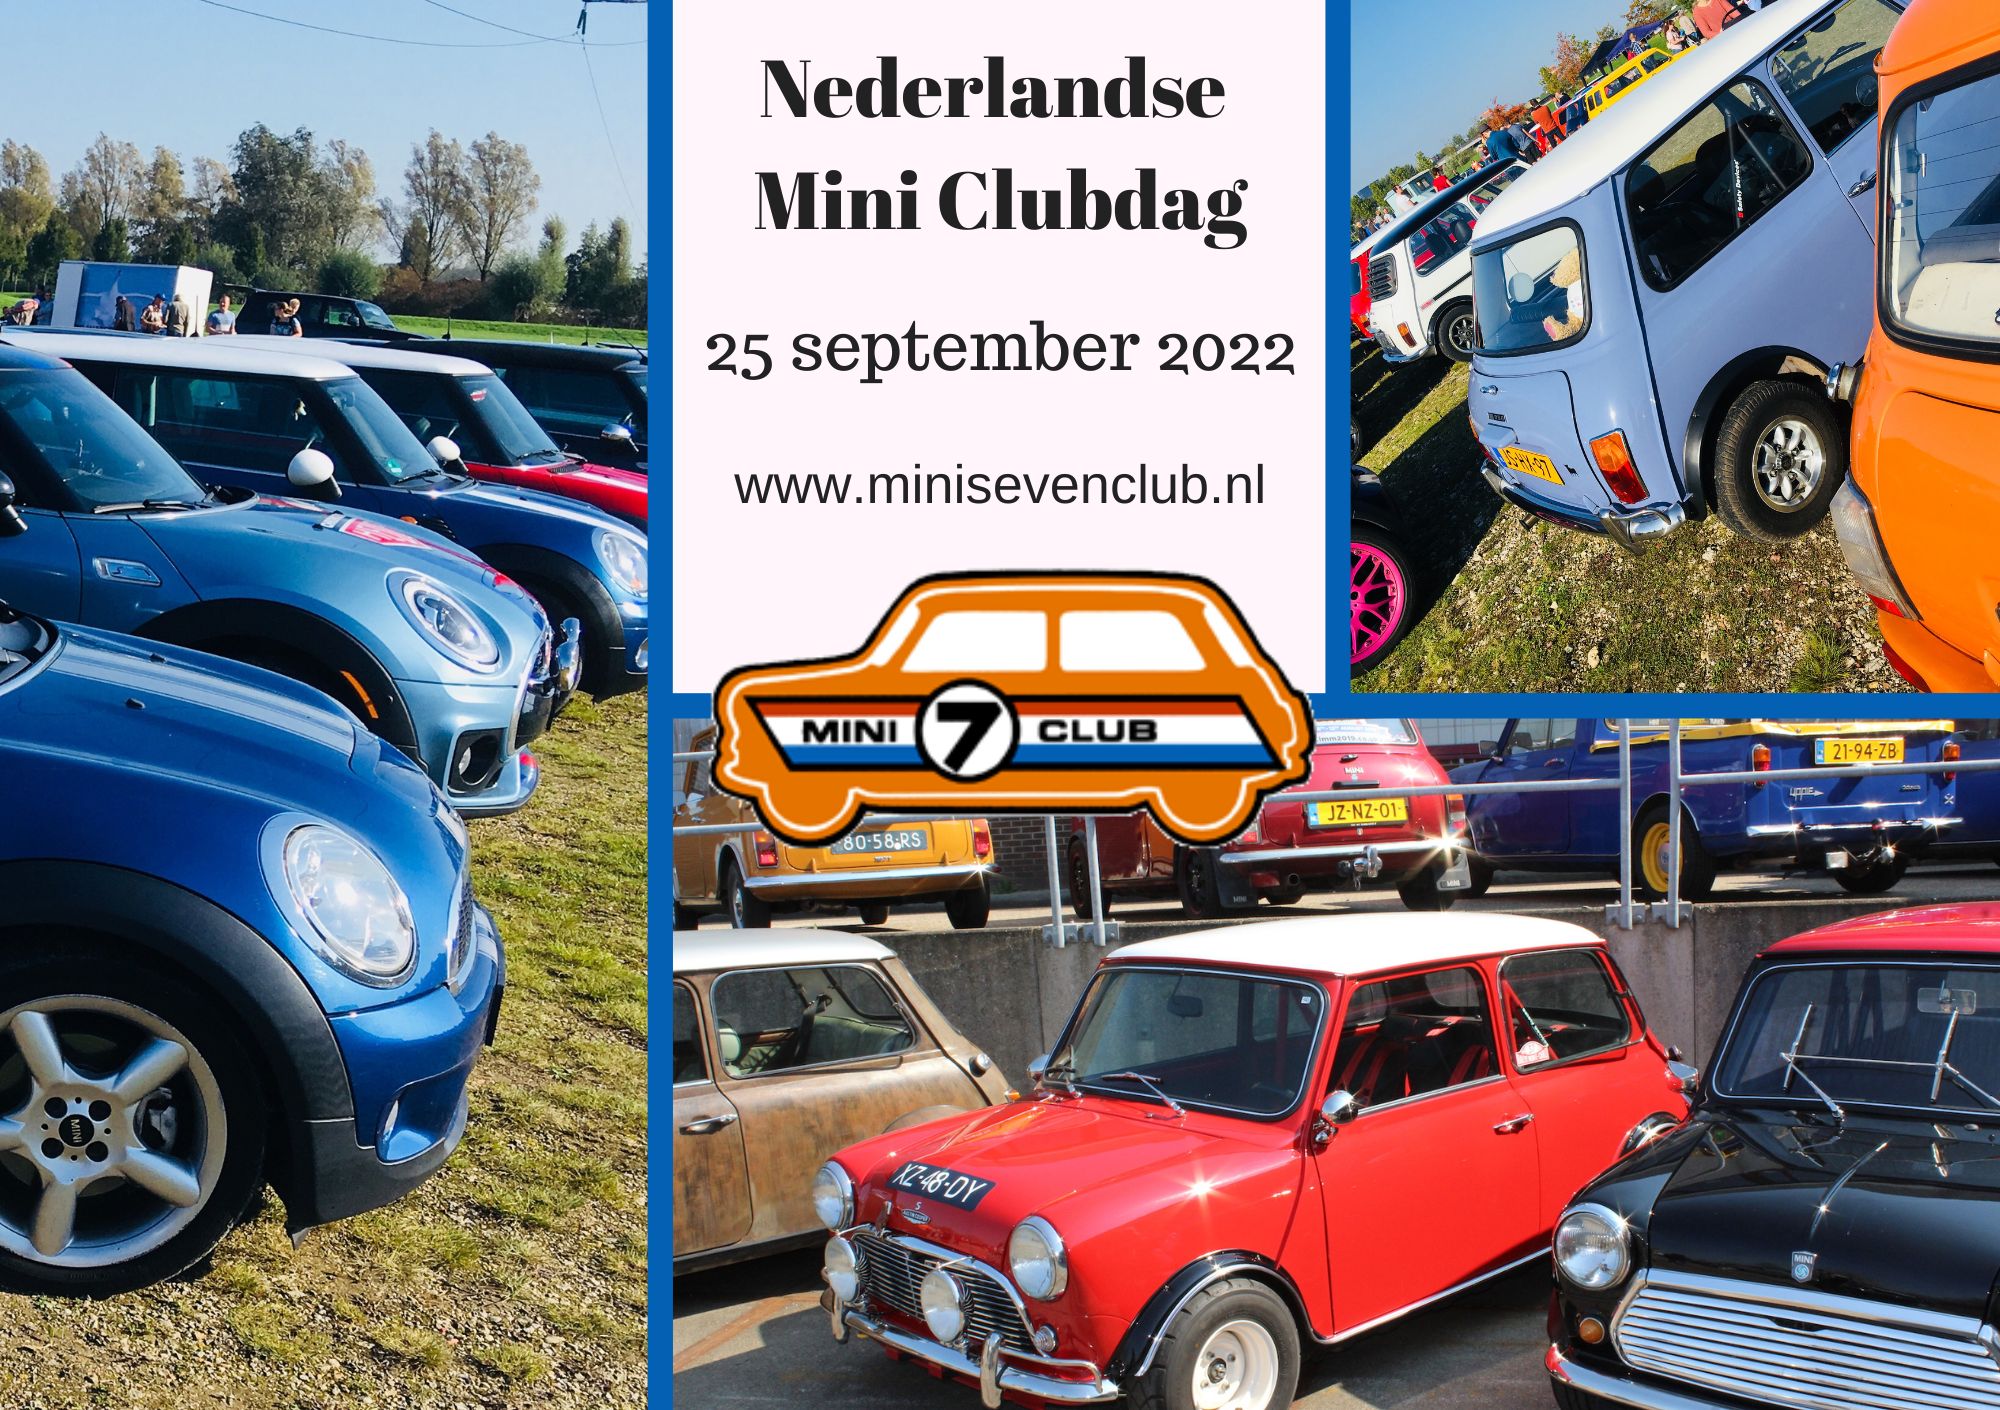 Uitnodiging Nederlandse Mini Clubdag